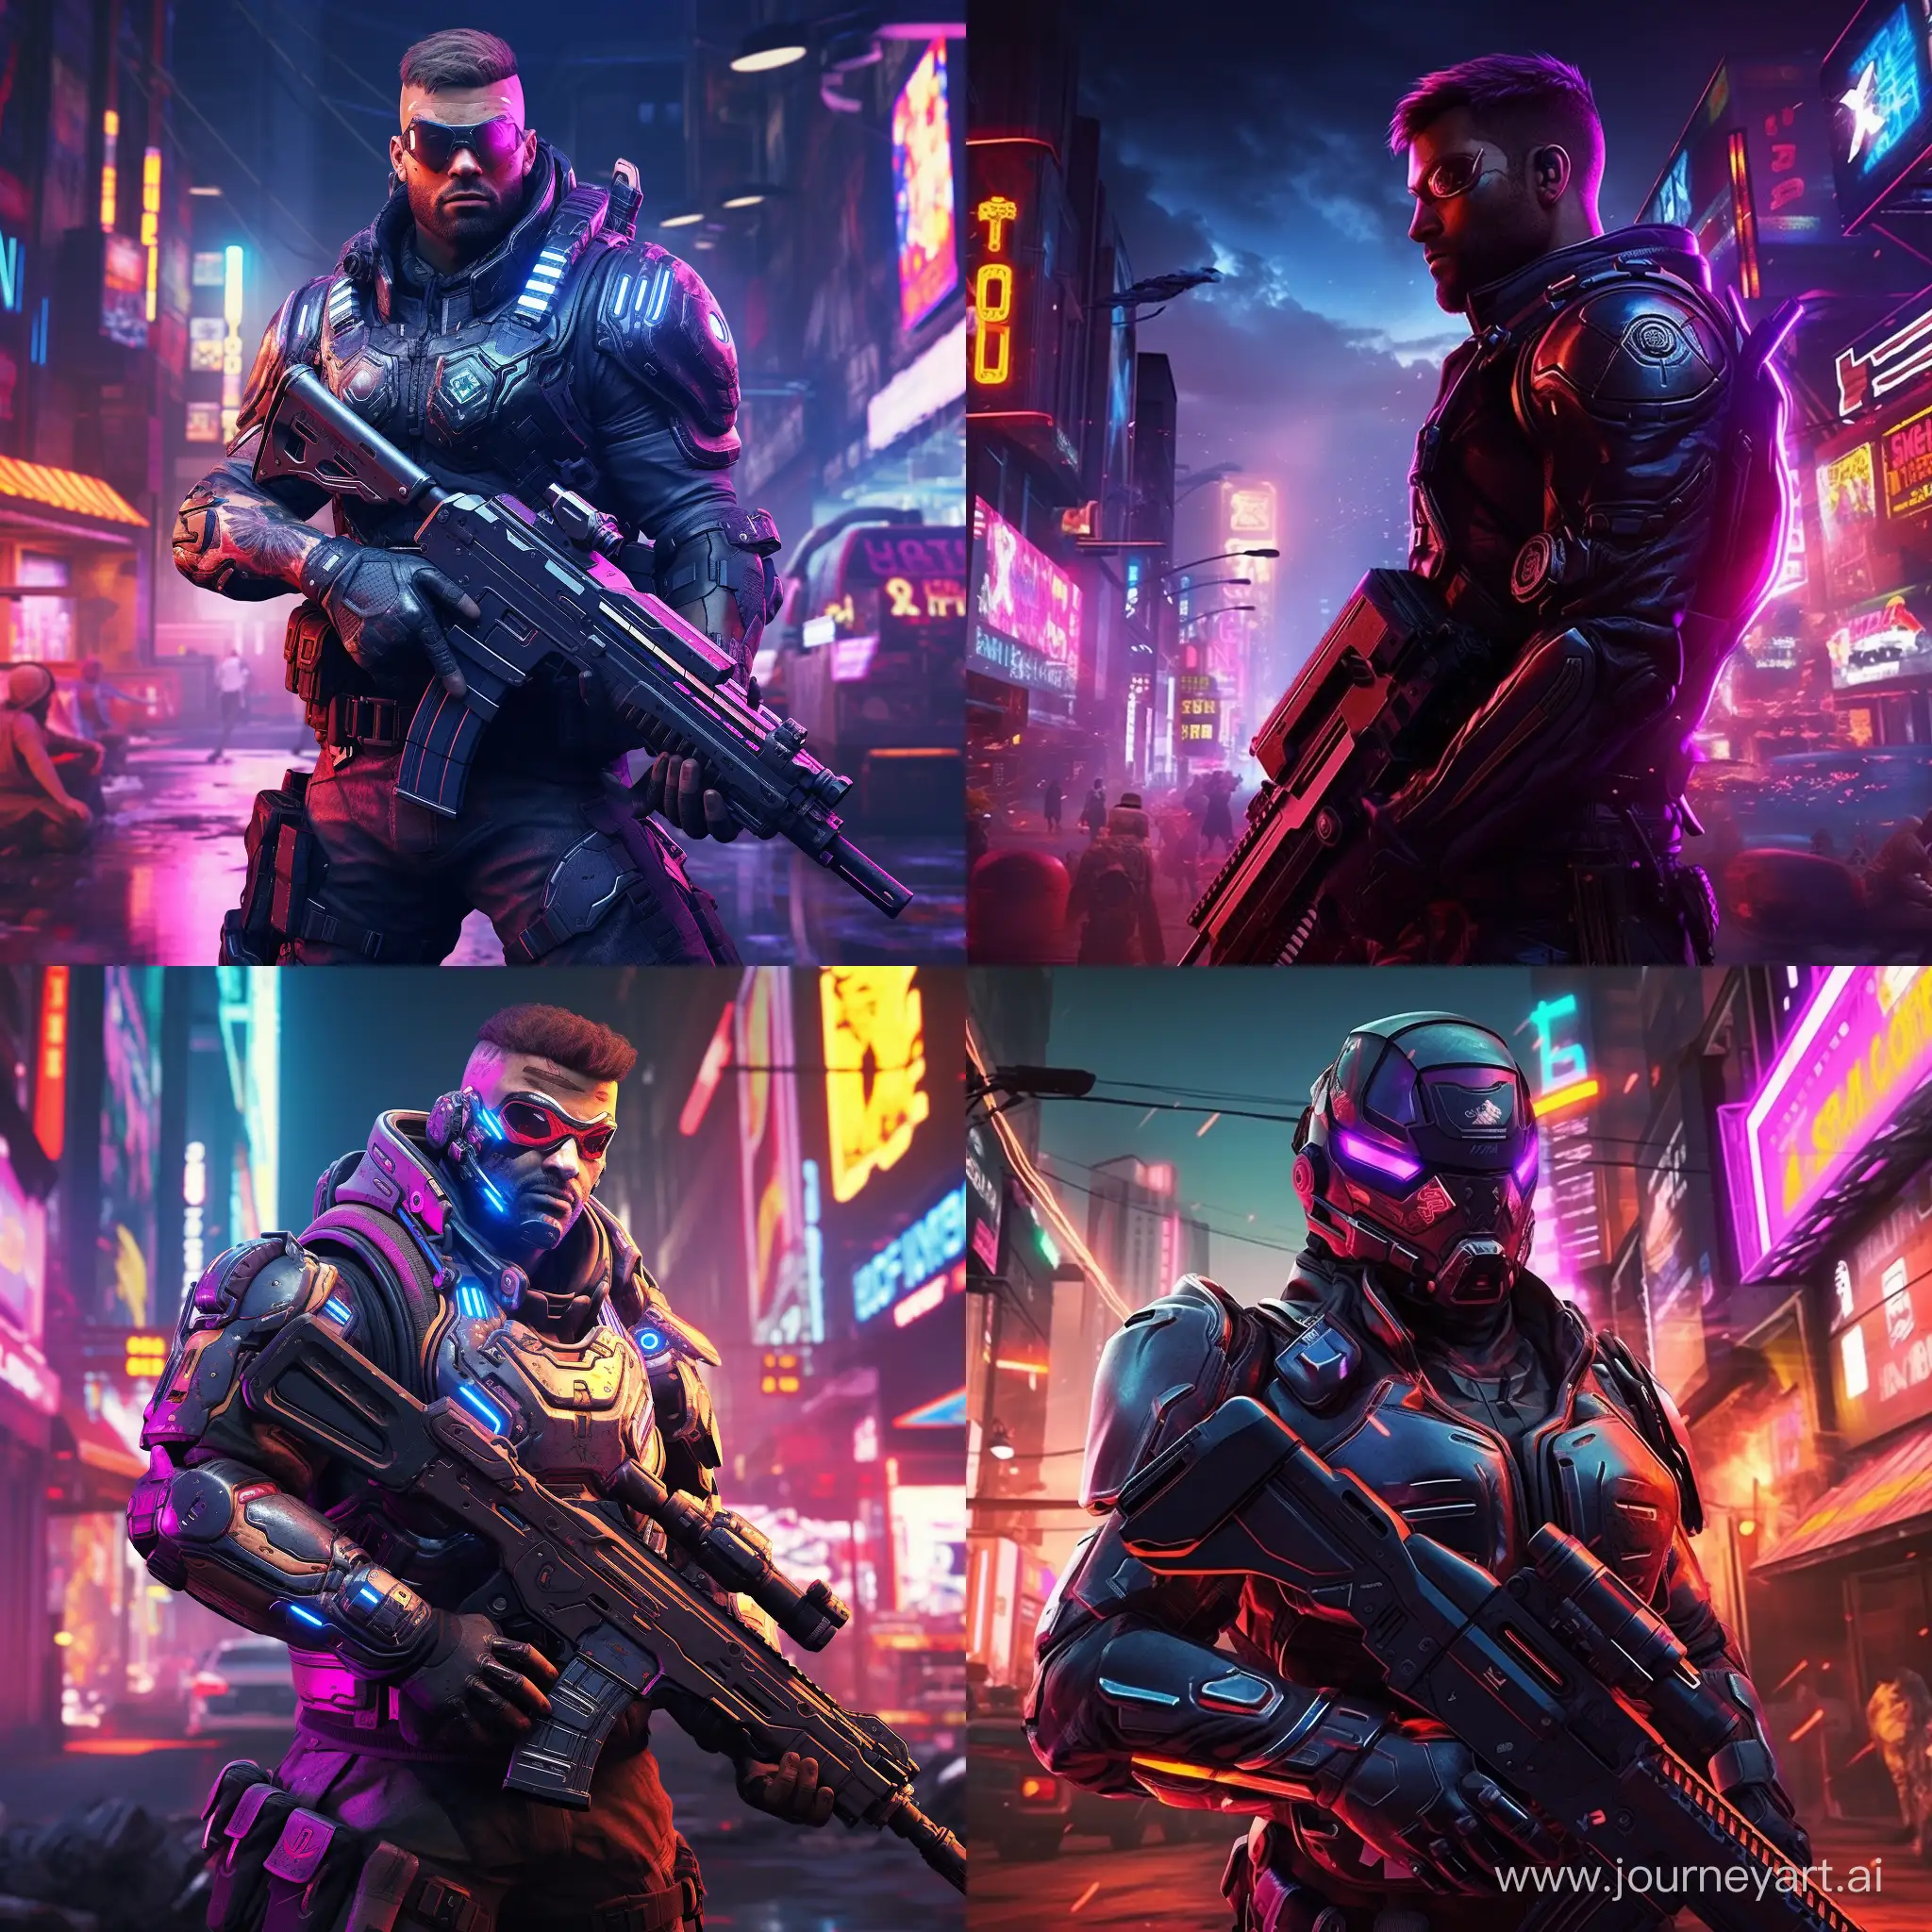 Futuristic-Cyberpunk-Soldier-with-Shield-and-Shotgun-Amidst-Neon-Cityscape